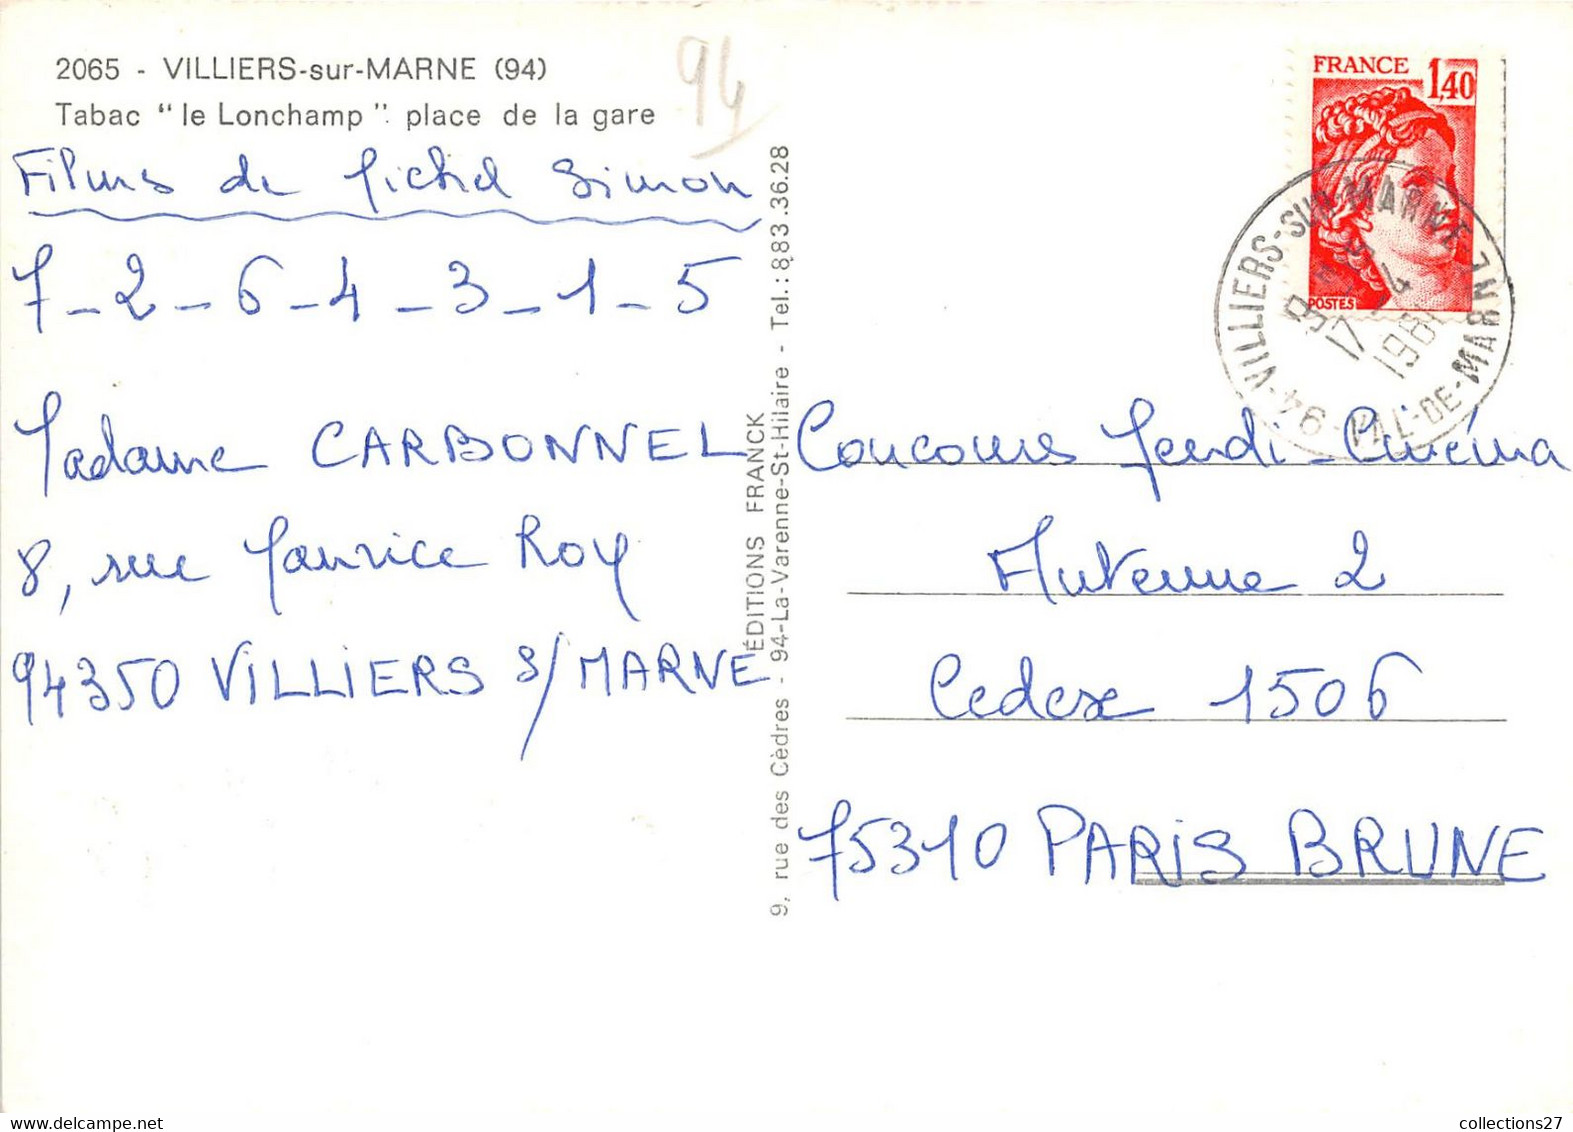 94-VILLIERS-SUR-MARNE- TABAC " LE LONCHAMP" PLACE DE LA GARE - Villiers Sur Marne